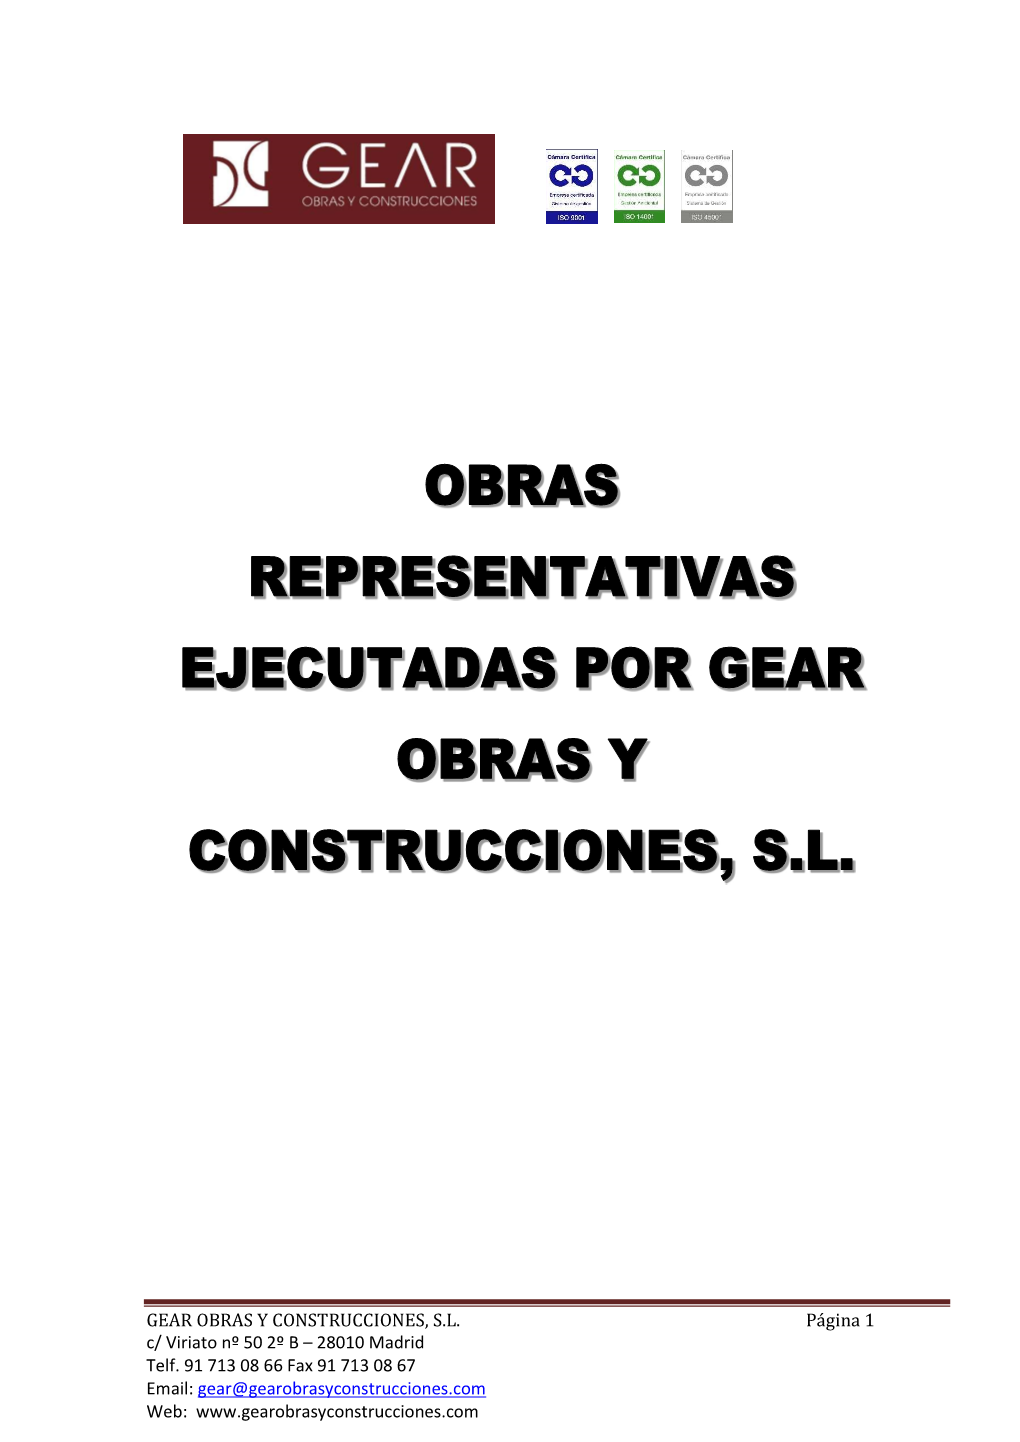 GEAR OBRAS Y CONSTRUCCIONES, SL Página